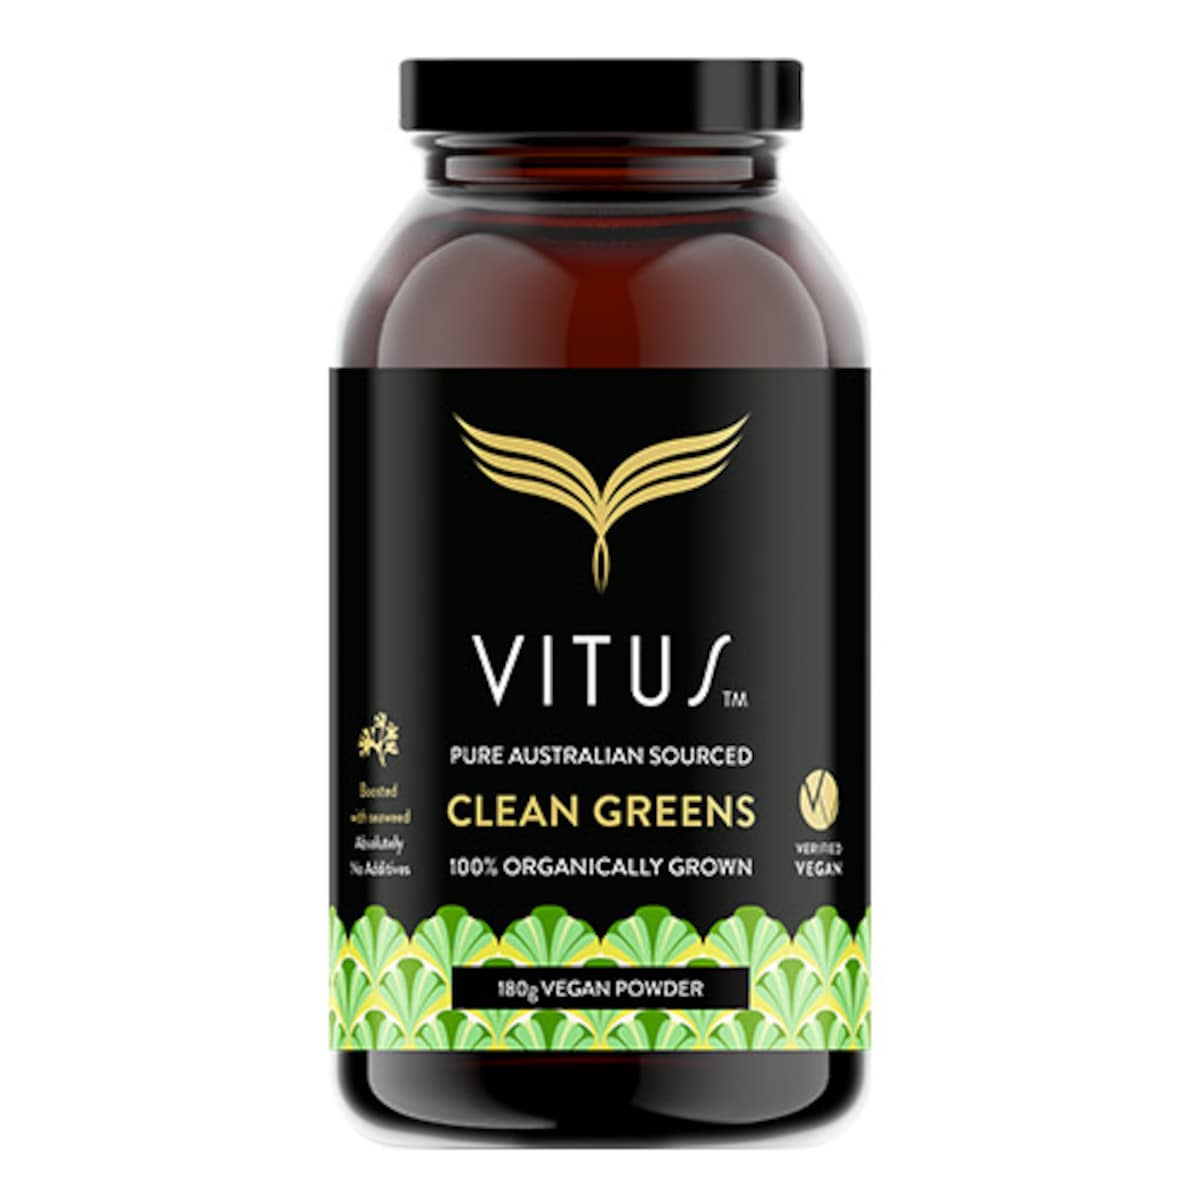 Vitus Clean Greens Vegan Powder 180g